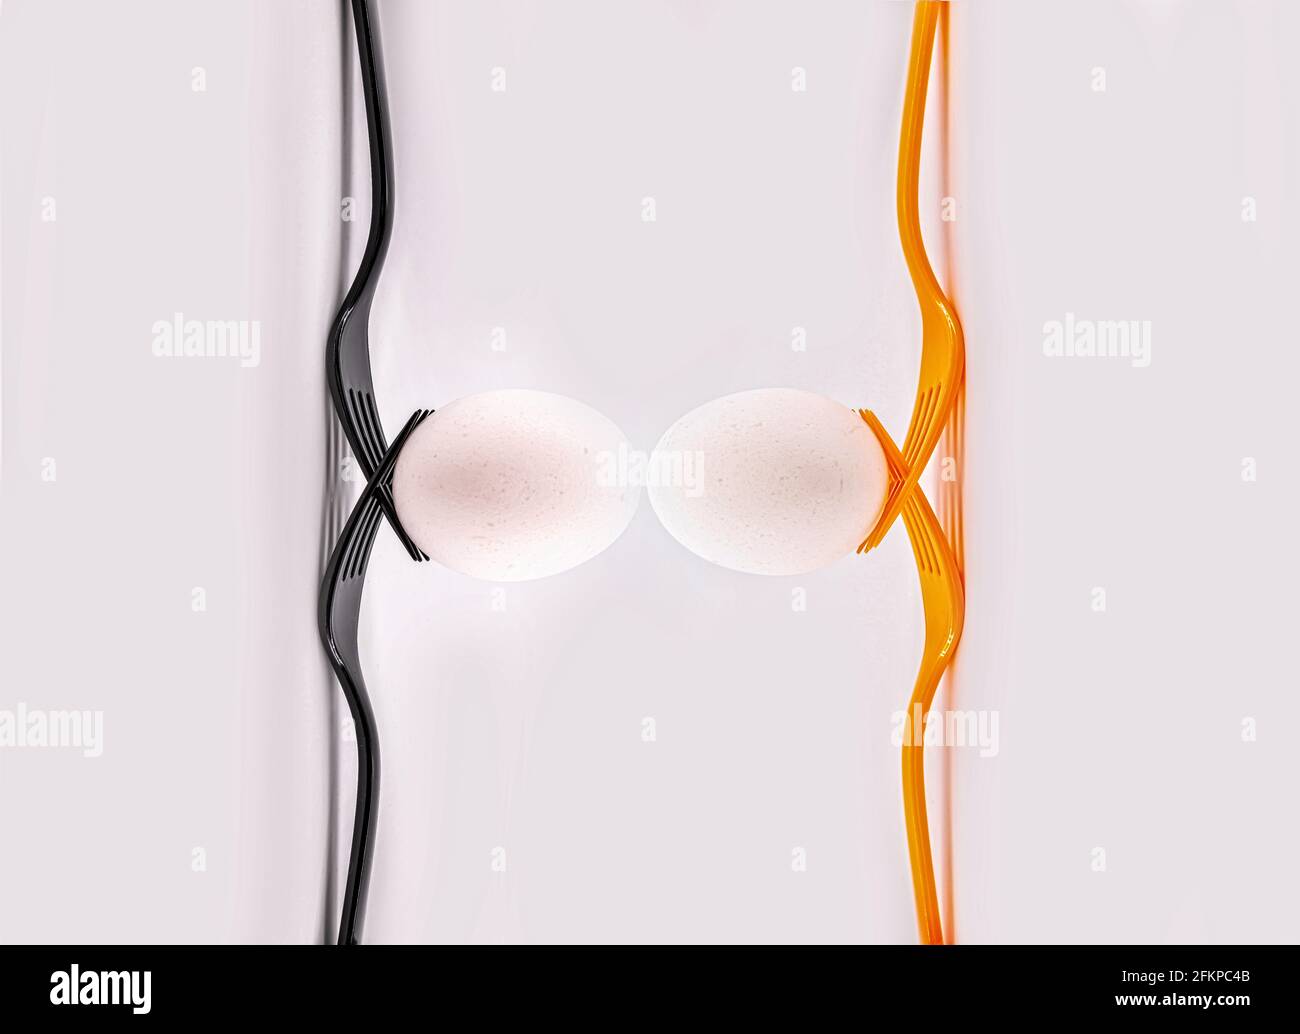 Zwei schwarze Gabeln und zwei orangefarbene Gabeln mit Eiern. Konzept inklusive Teamwork Stockfoto